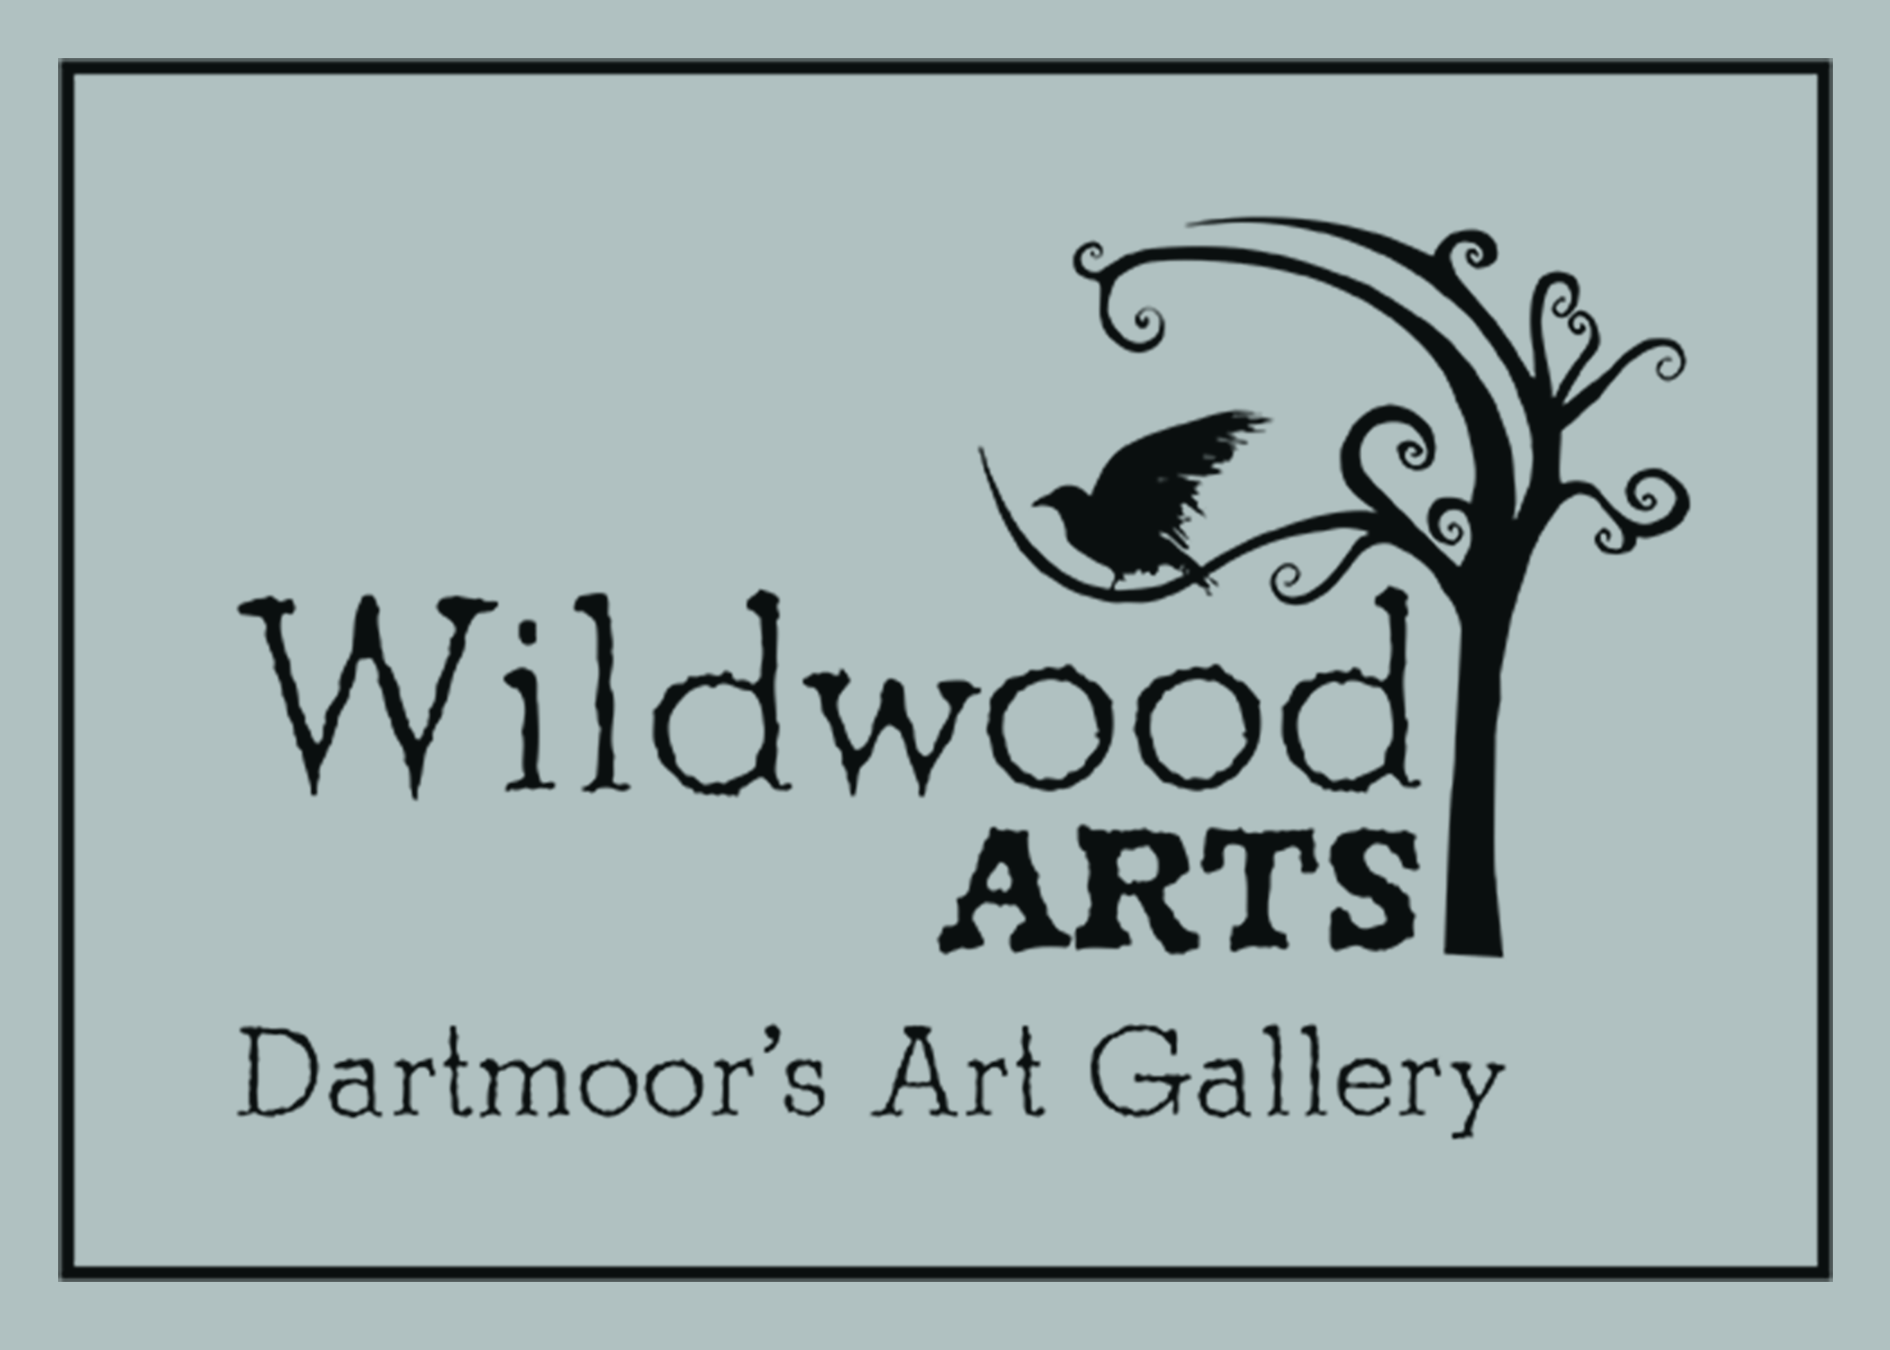 Wildwood Arts Dartmoor